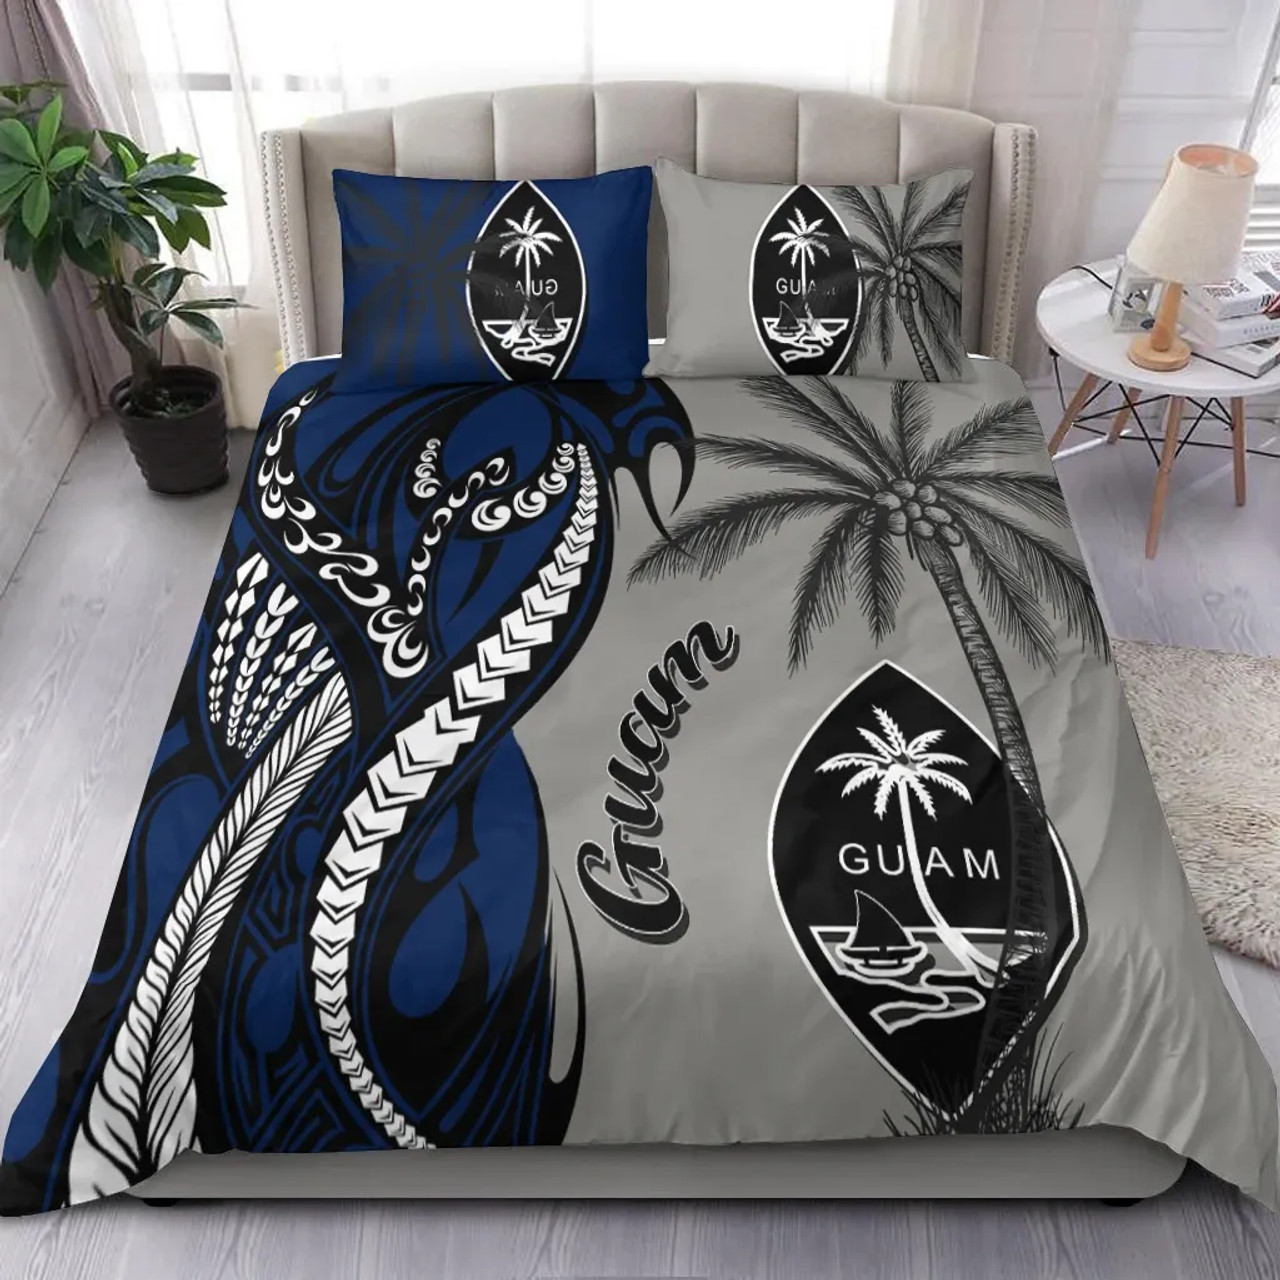 Guam Bedding Set - Classical Coconut Tree 2